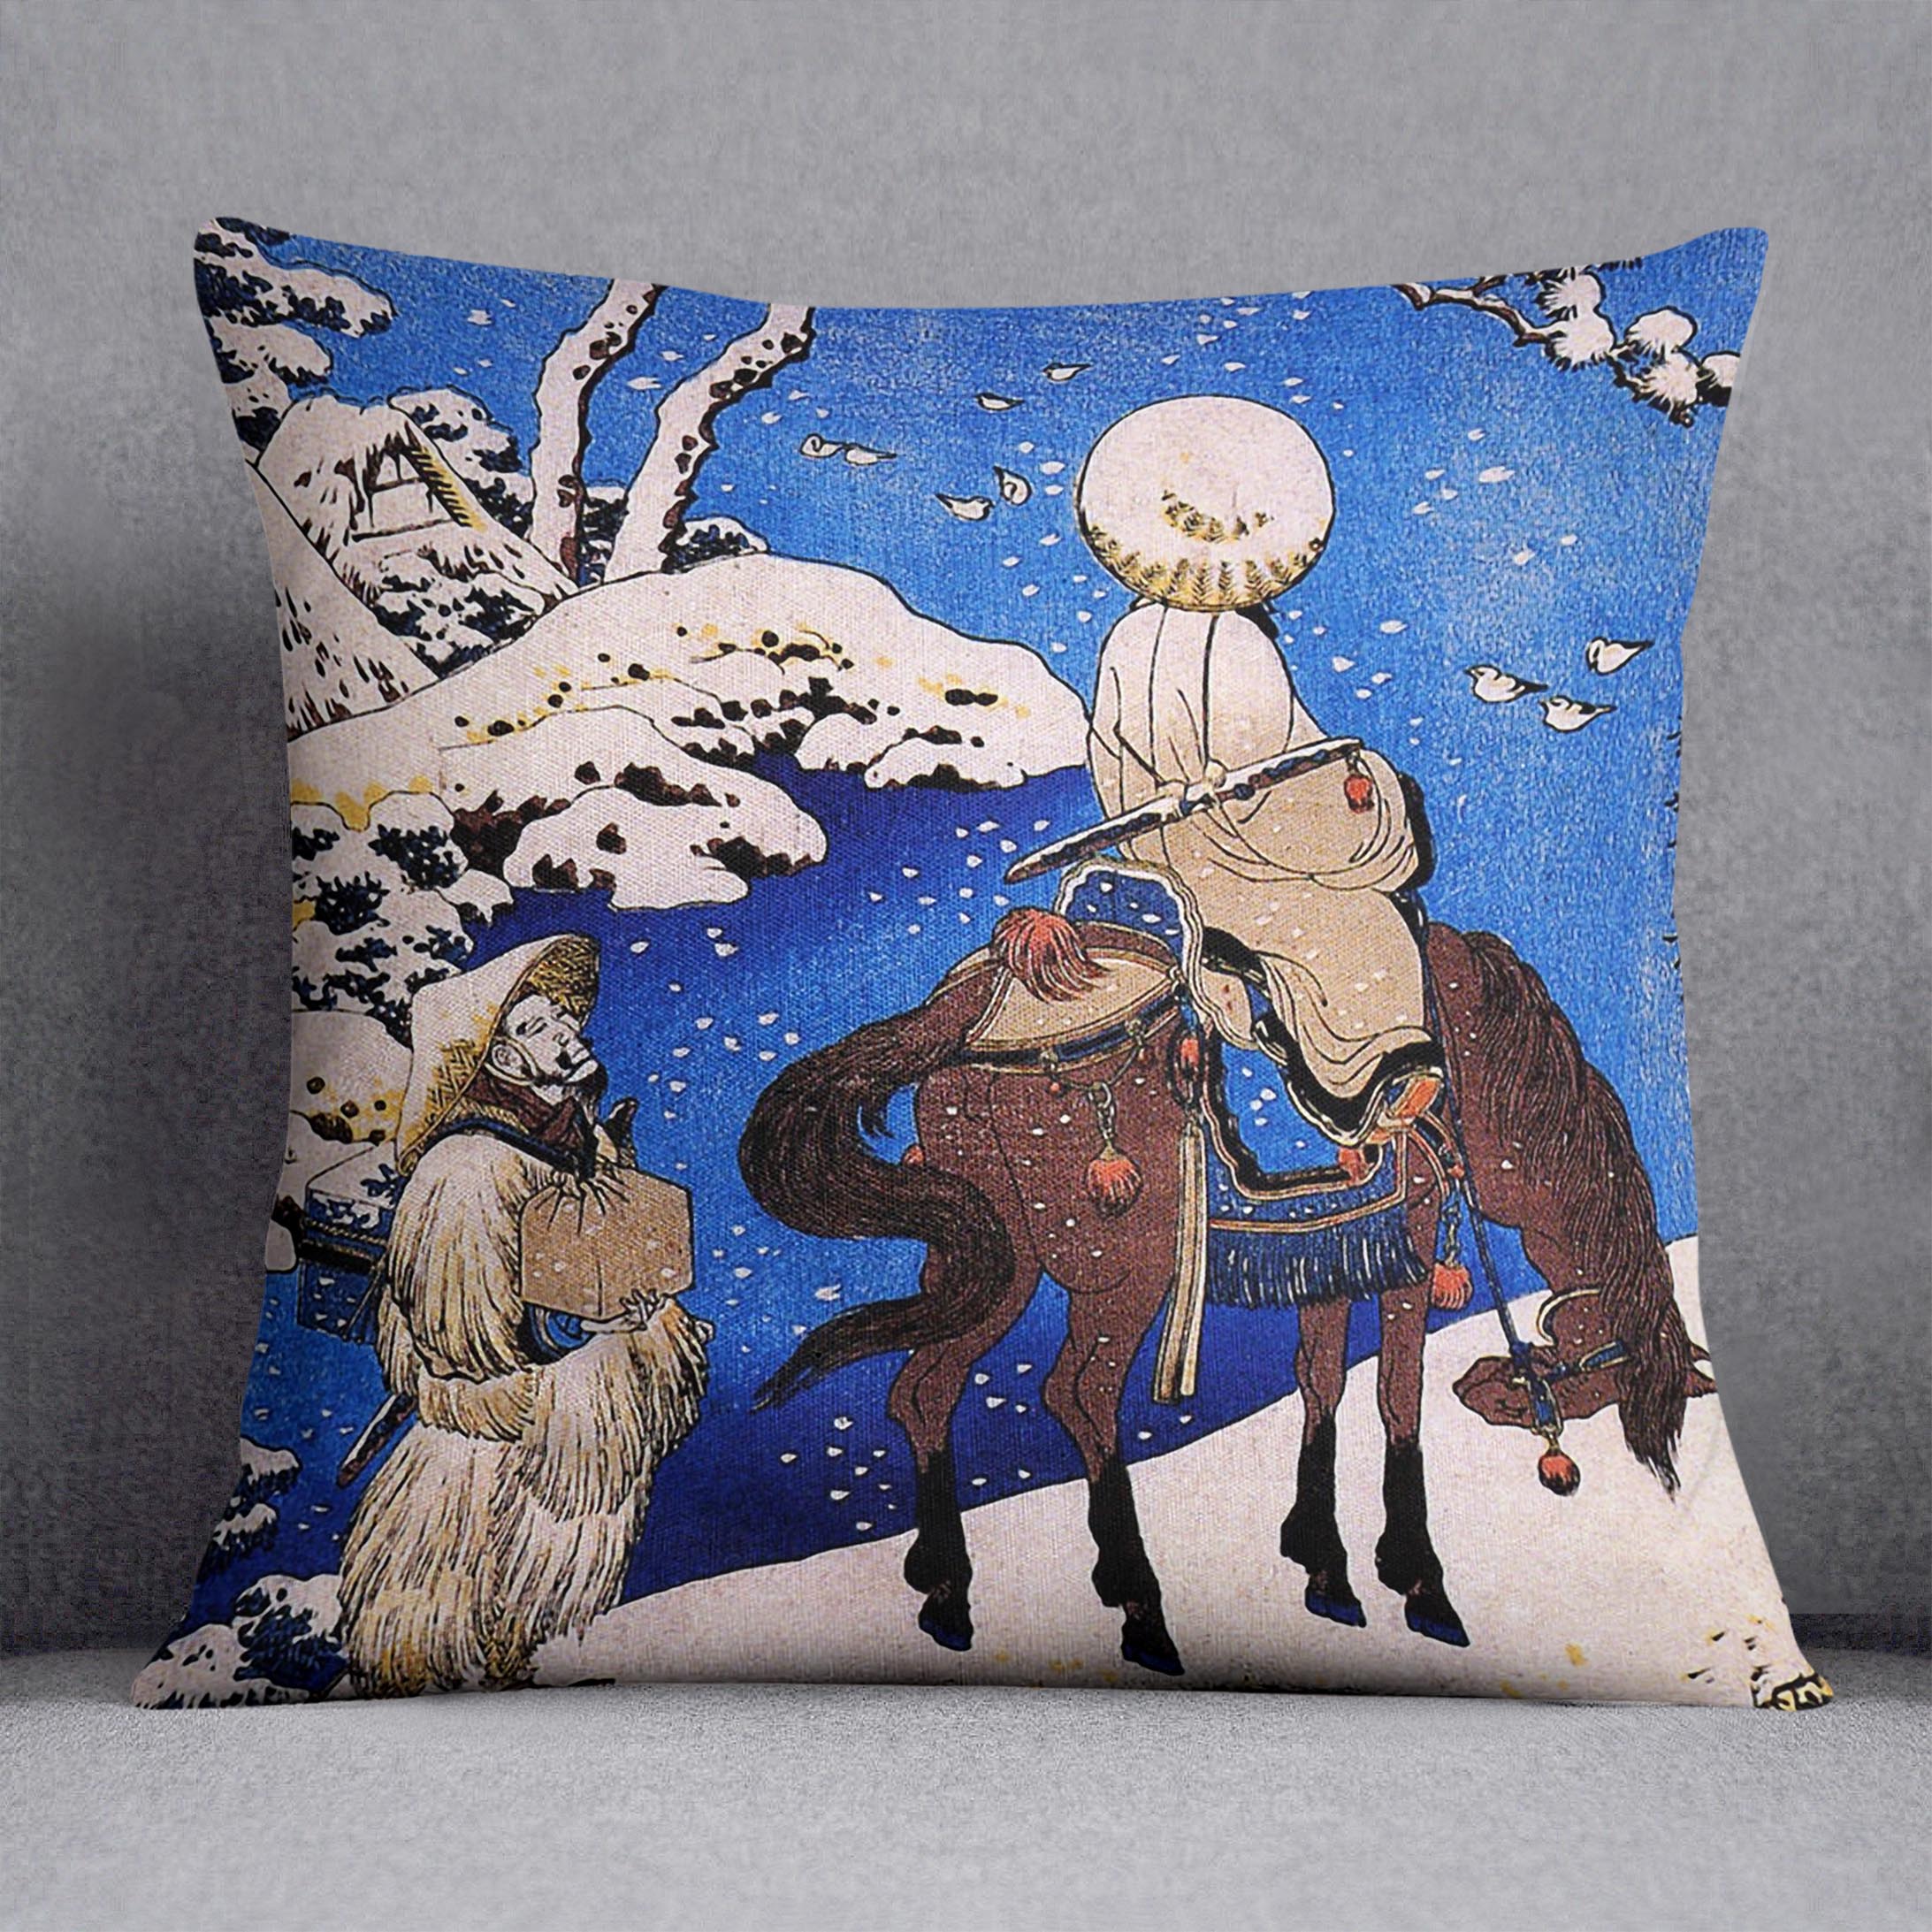 The poet Teba on a horse by Hokusai Cushion